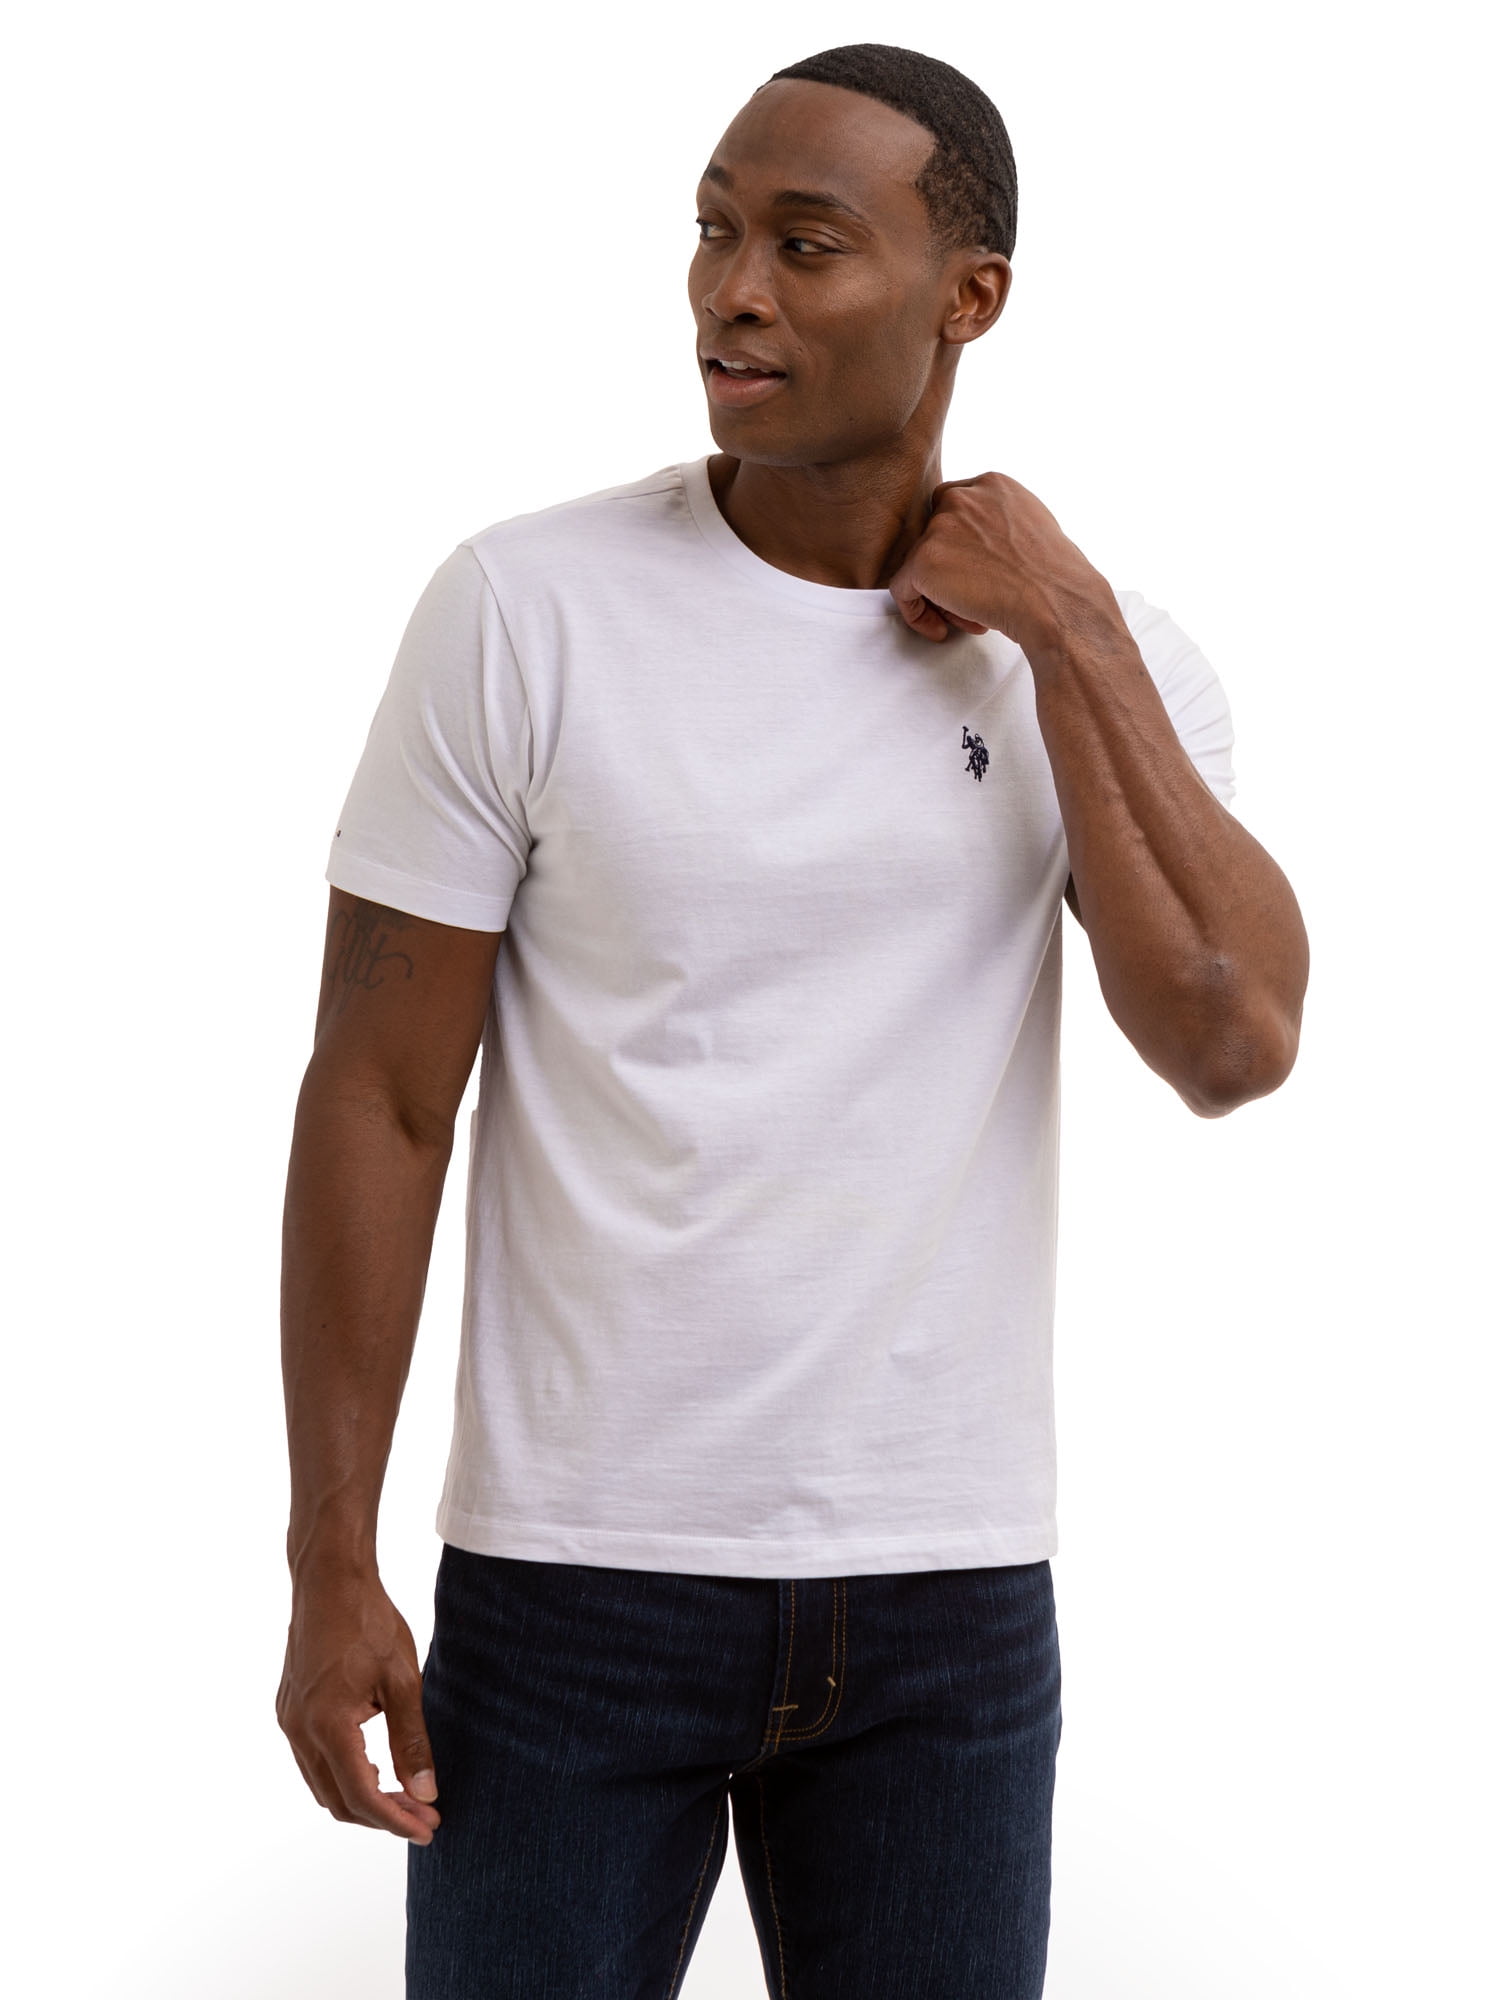 U.S. Polo Assn. Men's Short Sleeve Crew T-Shirt - Walmart.com